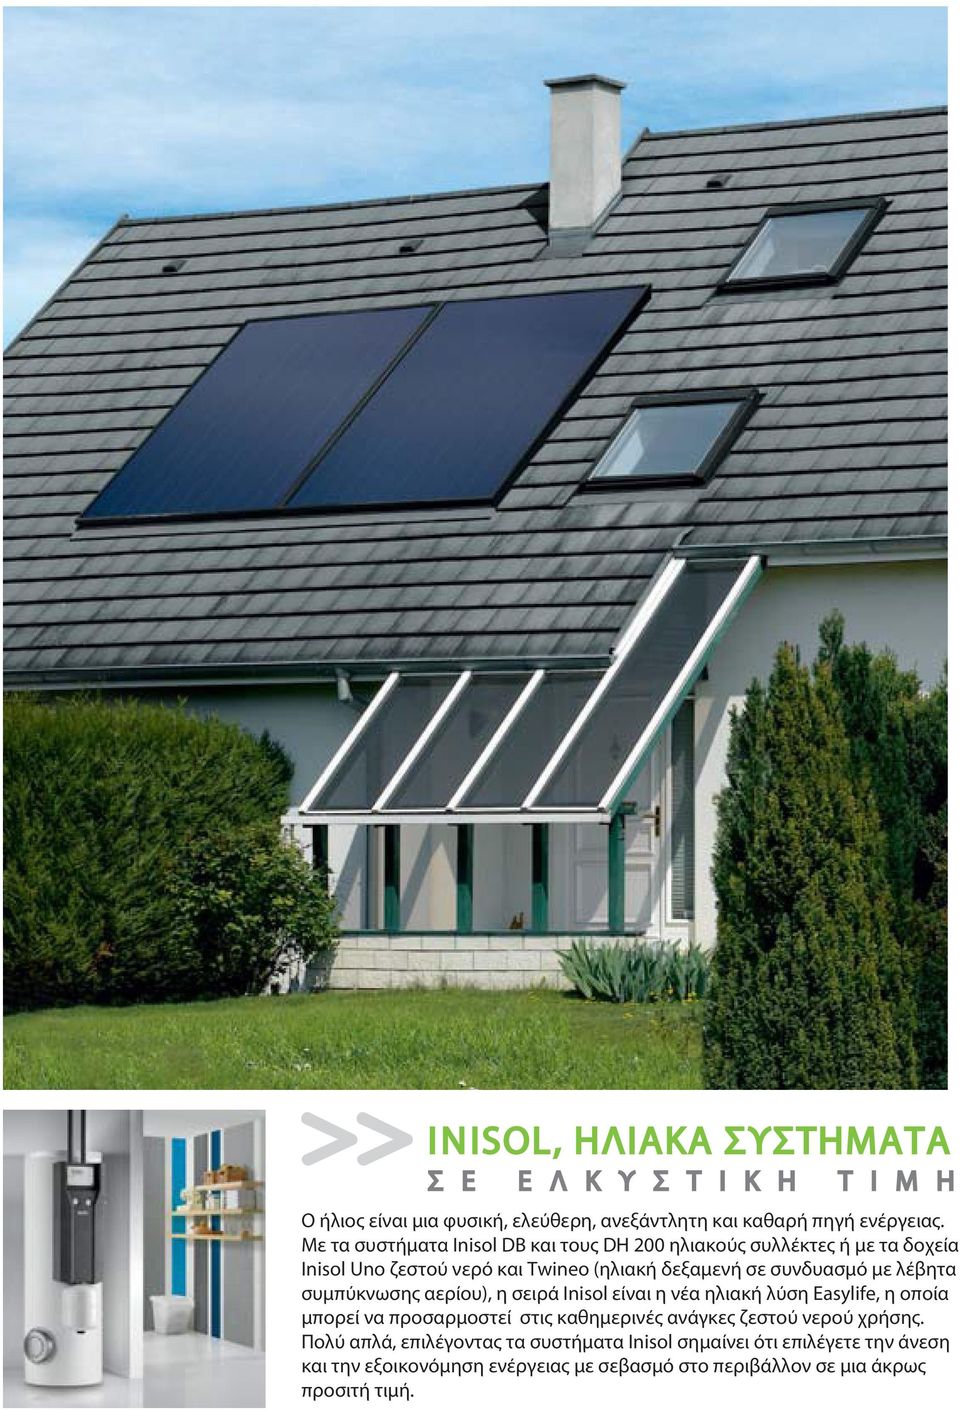 λέβητα συμπύκνωσης αερίου), η σειρά Inisol είναι η νέα ηλιακή λύση Easylife, η οποία μπορεί να προσαρμοστεί στις καθημερινές ανάγκες ζεστού νερού